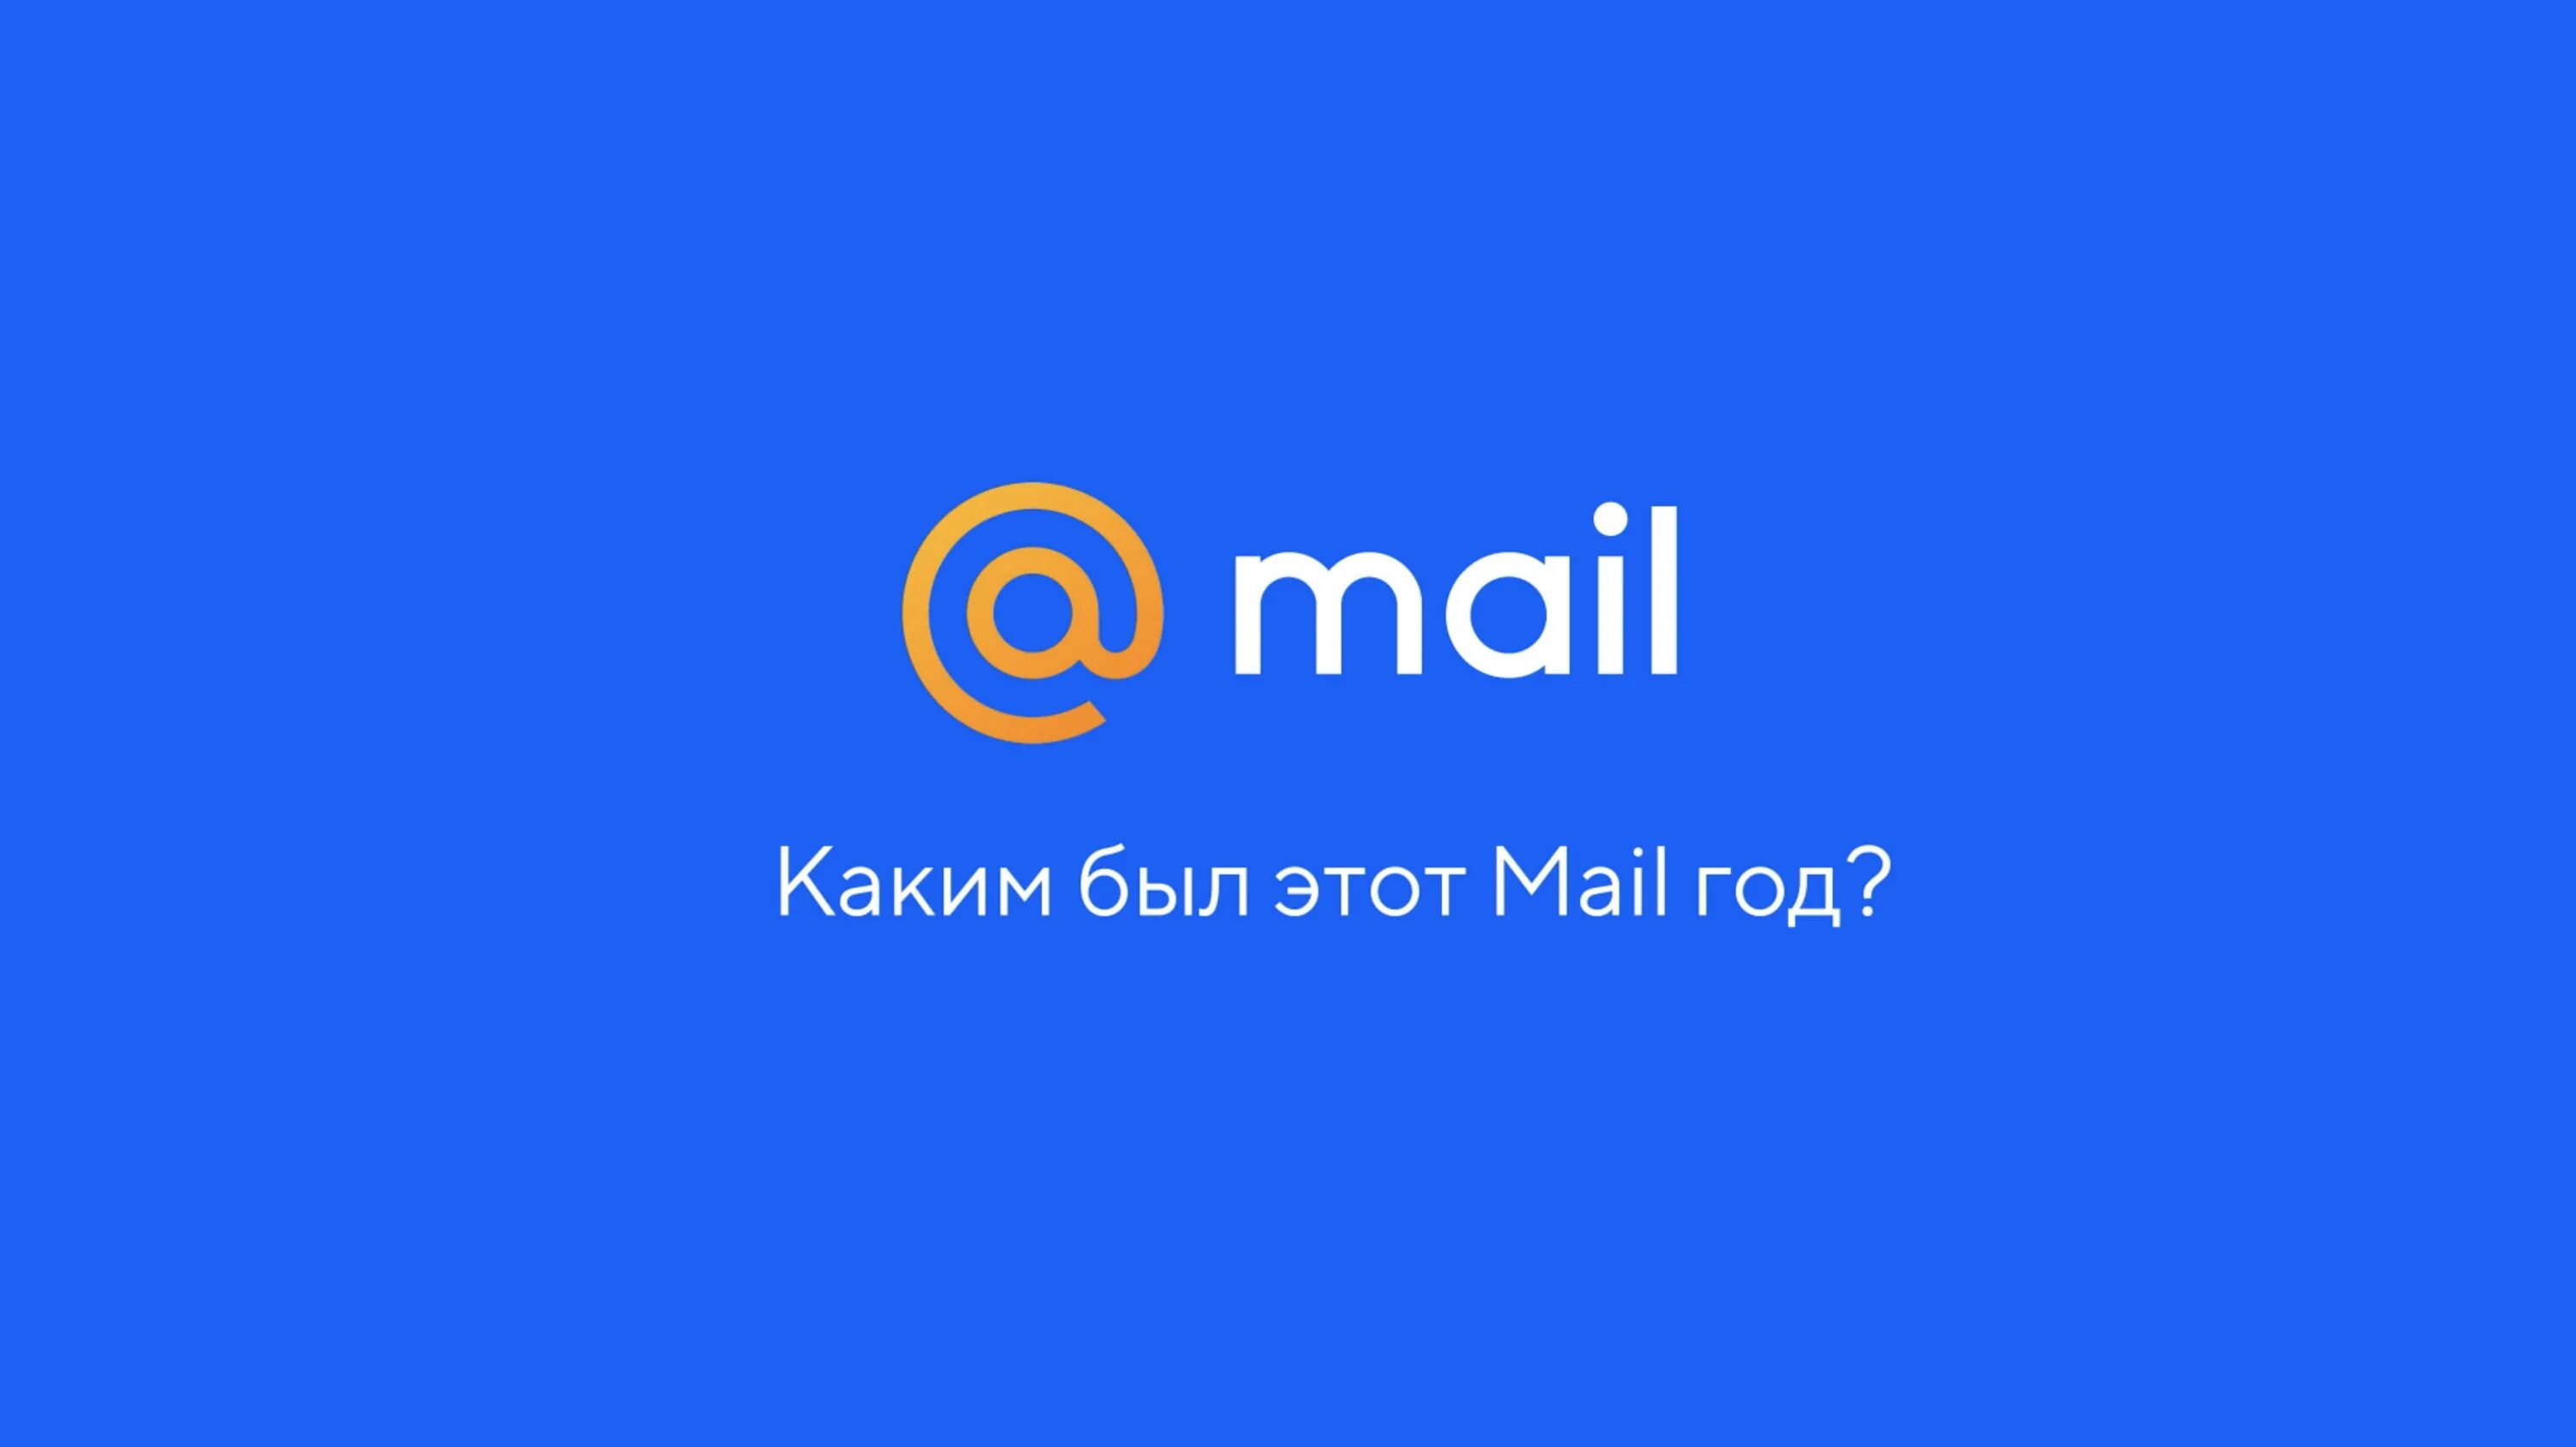 Sharing mail ru. Mail. Почта майл. Mia l. Mai ly.